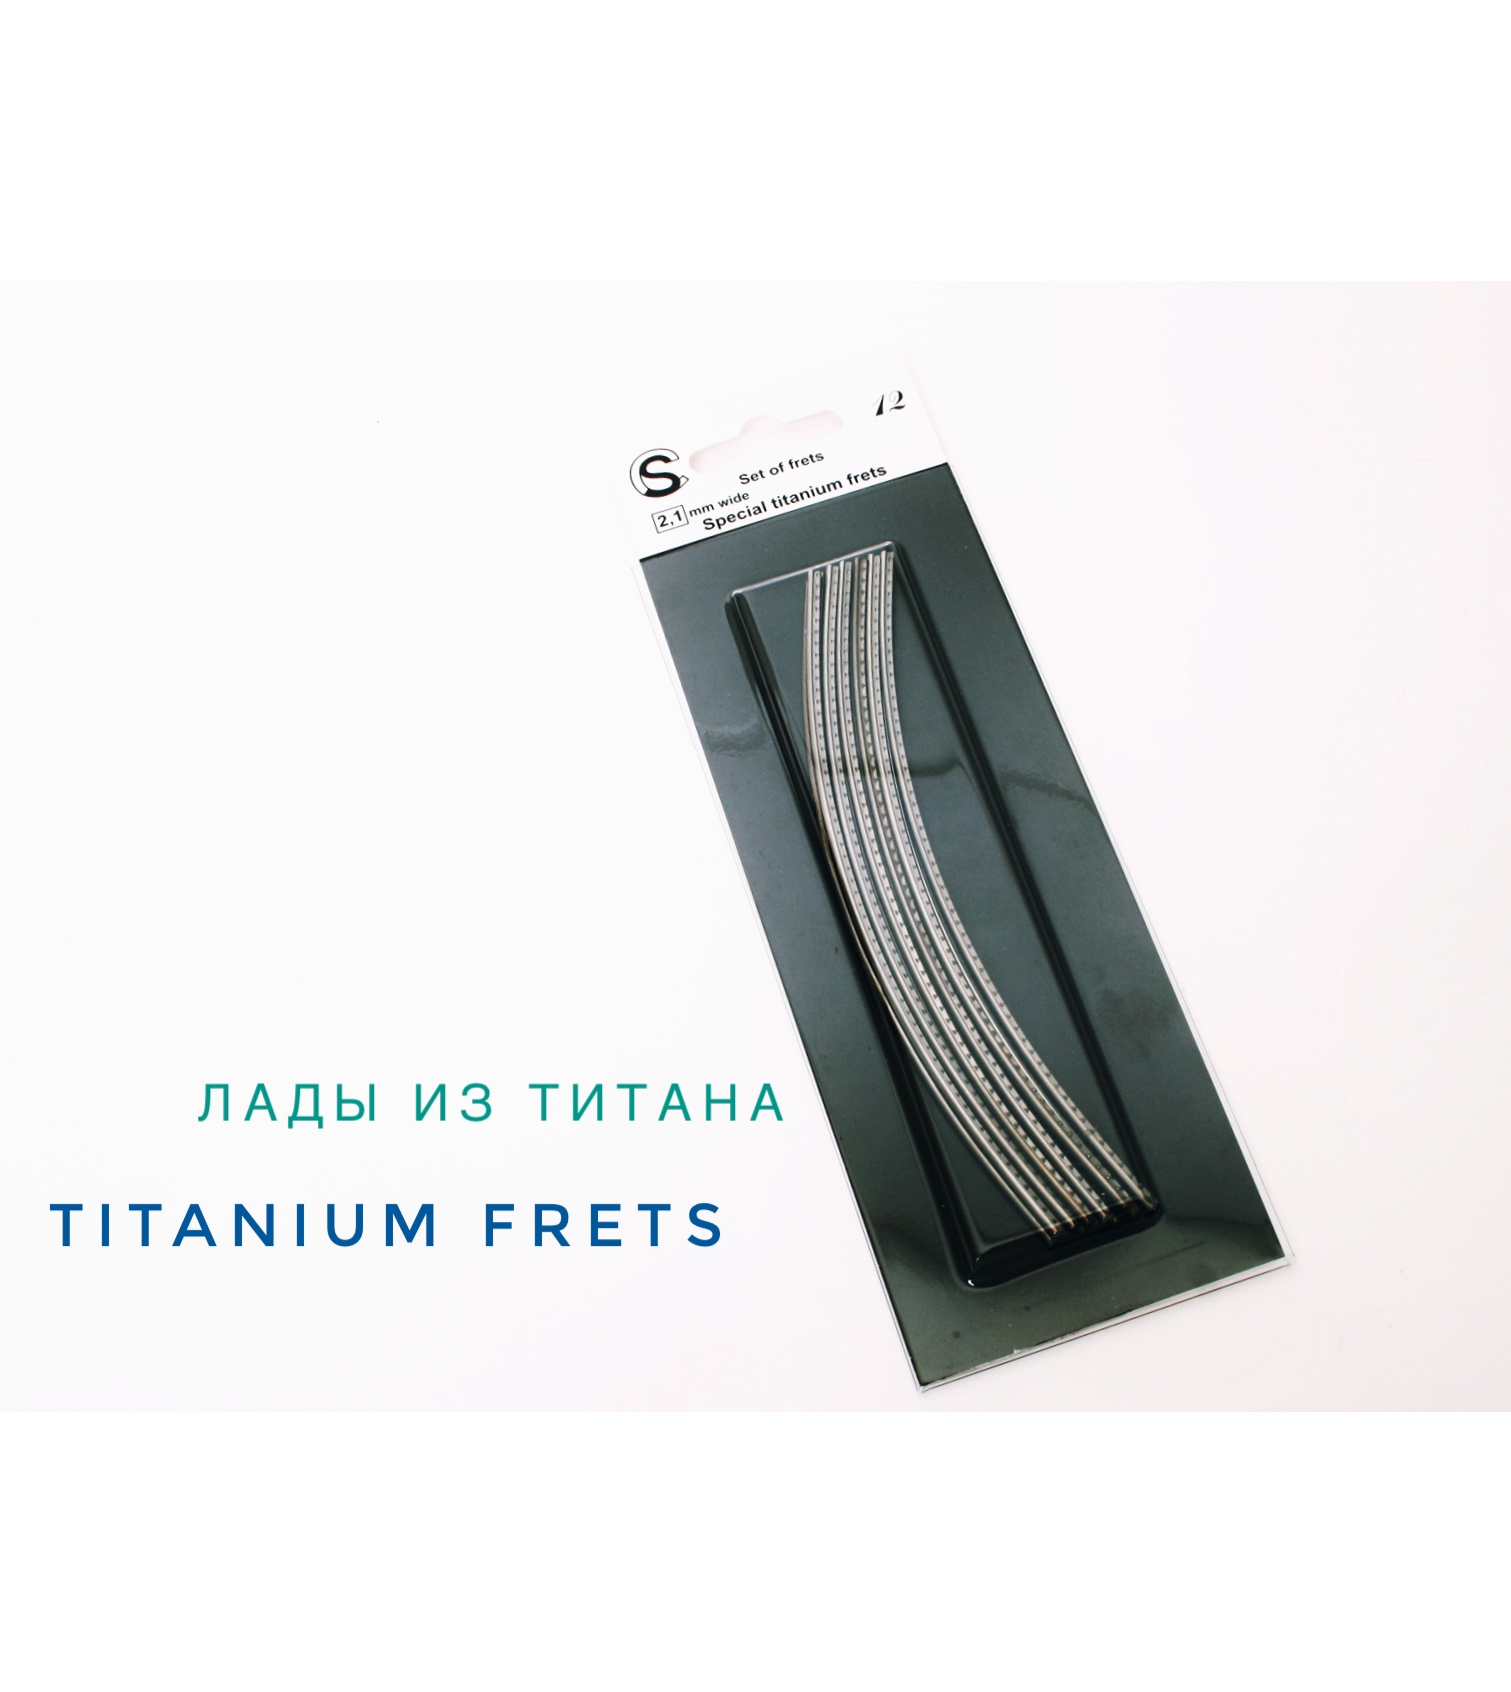 Особенности материалов: титан специальный (STI)